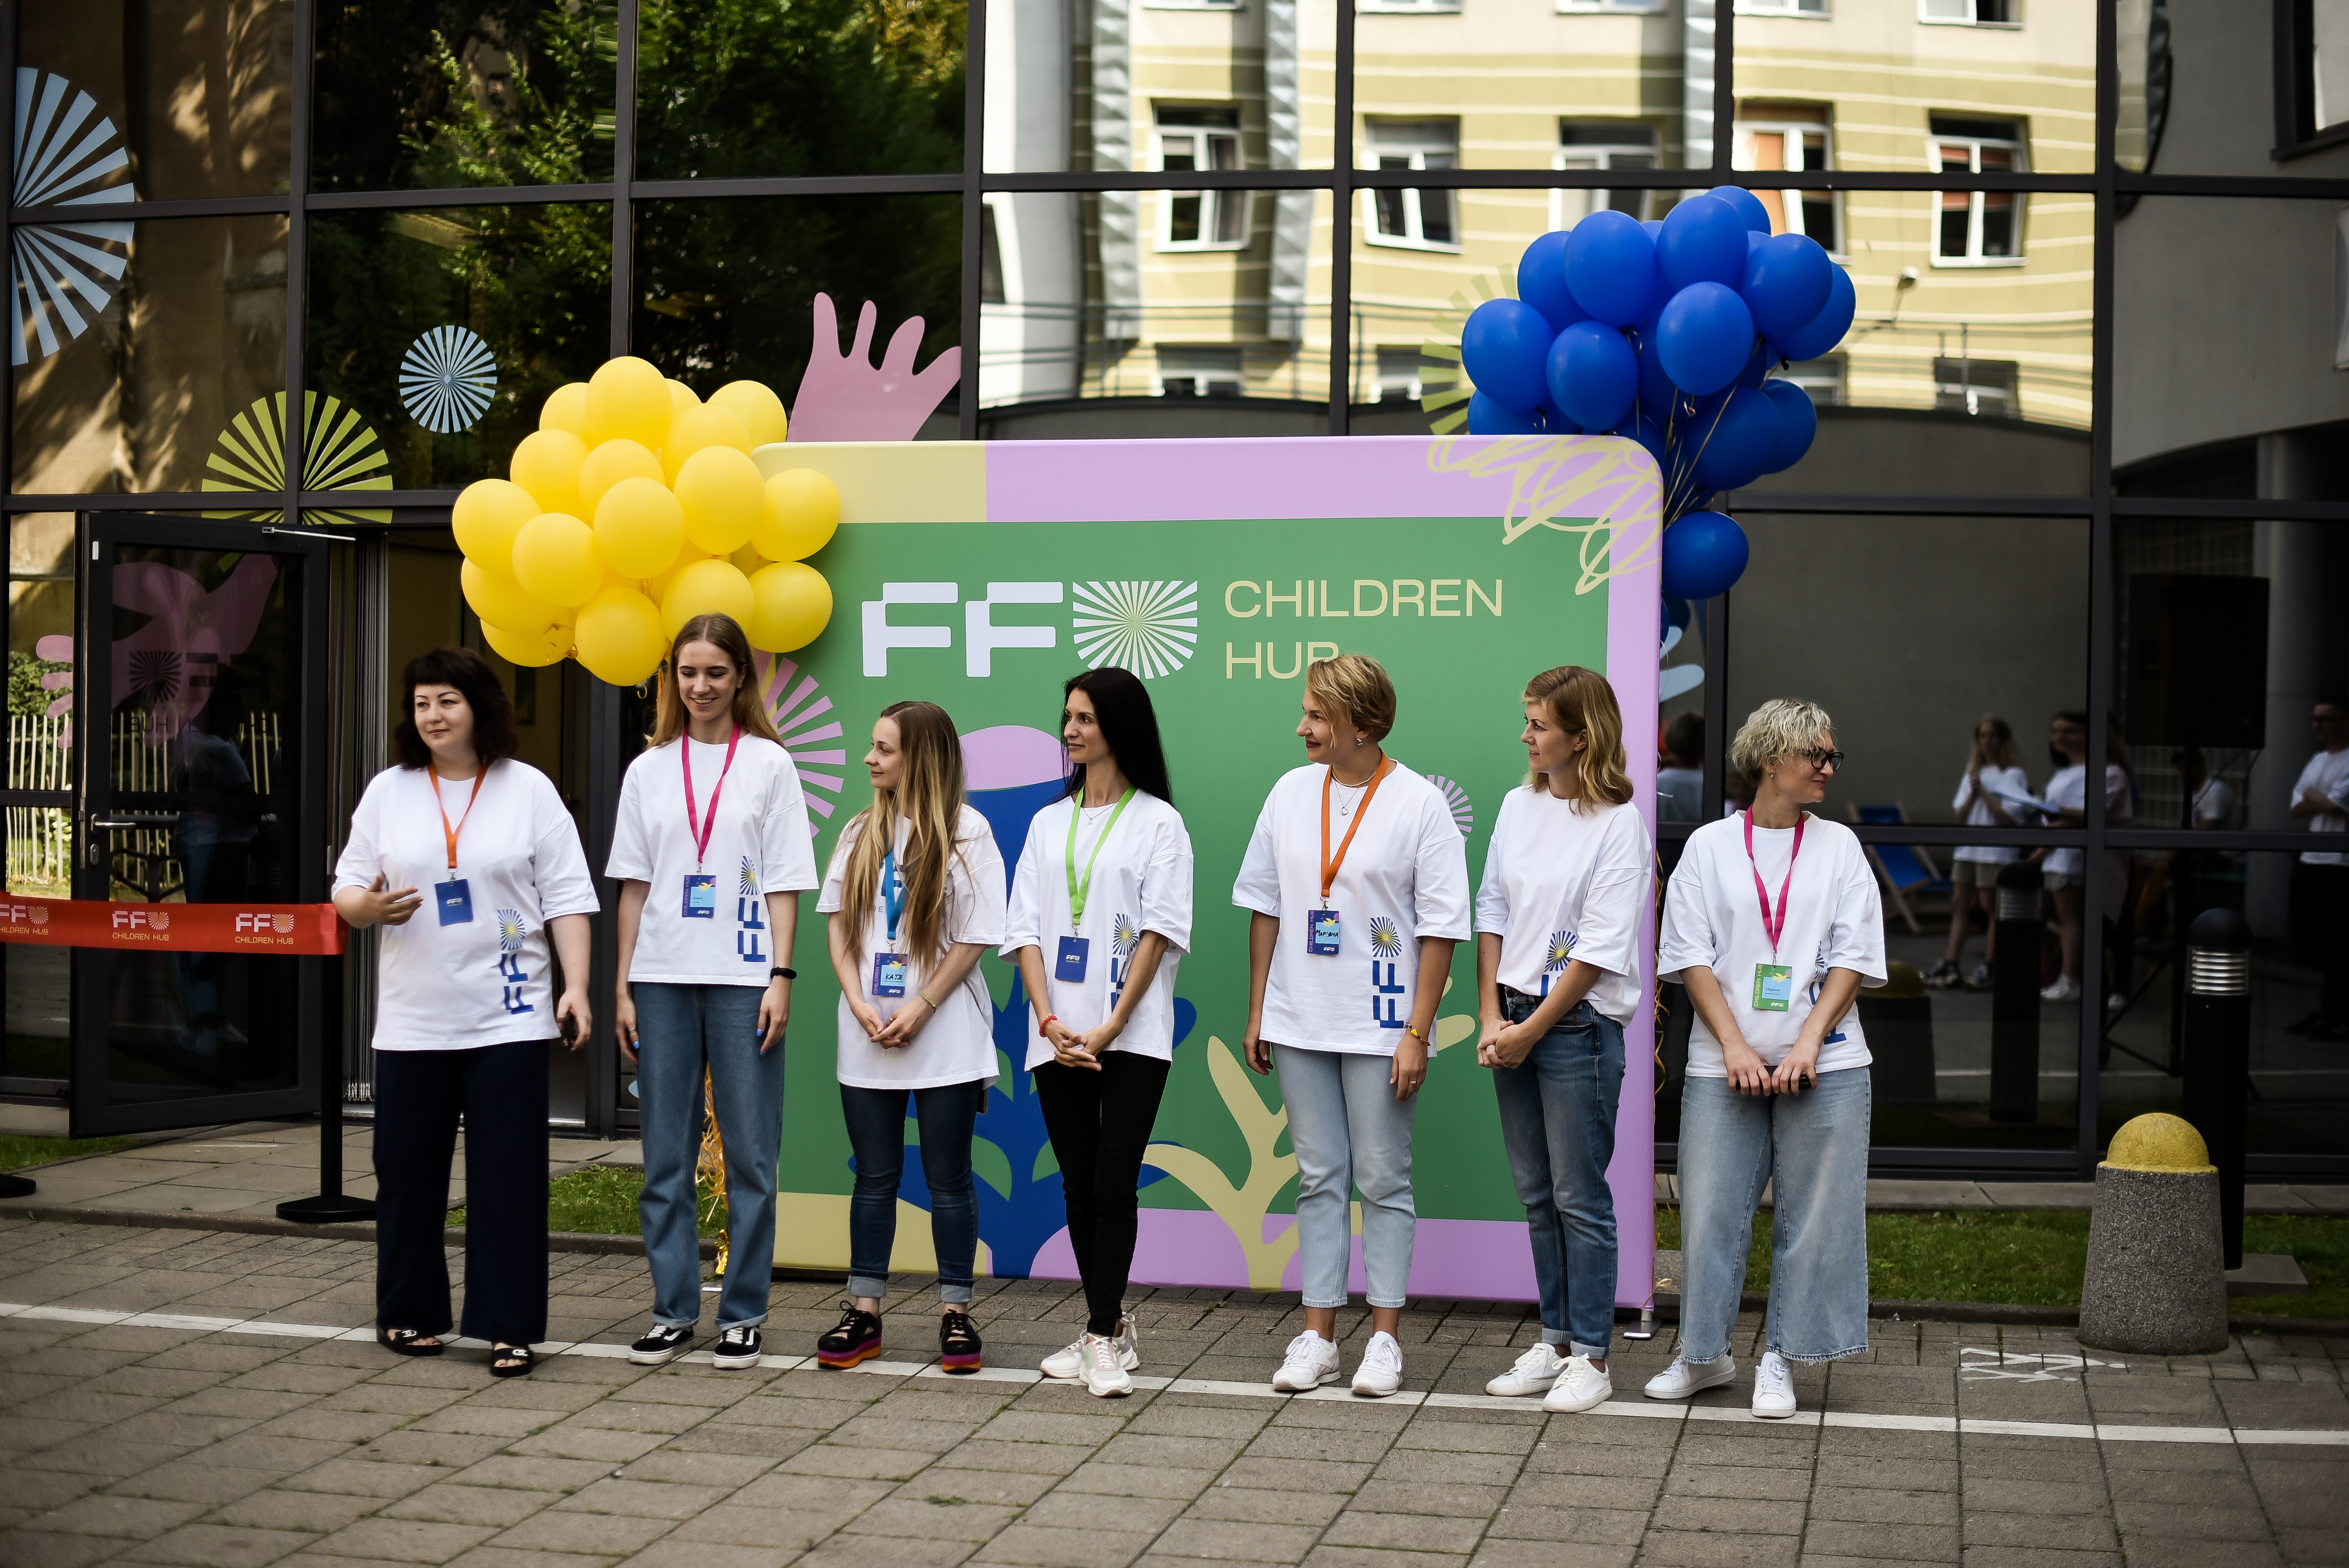 В Варшаве открылся украинский детский центр Children Hub - фото 3